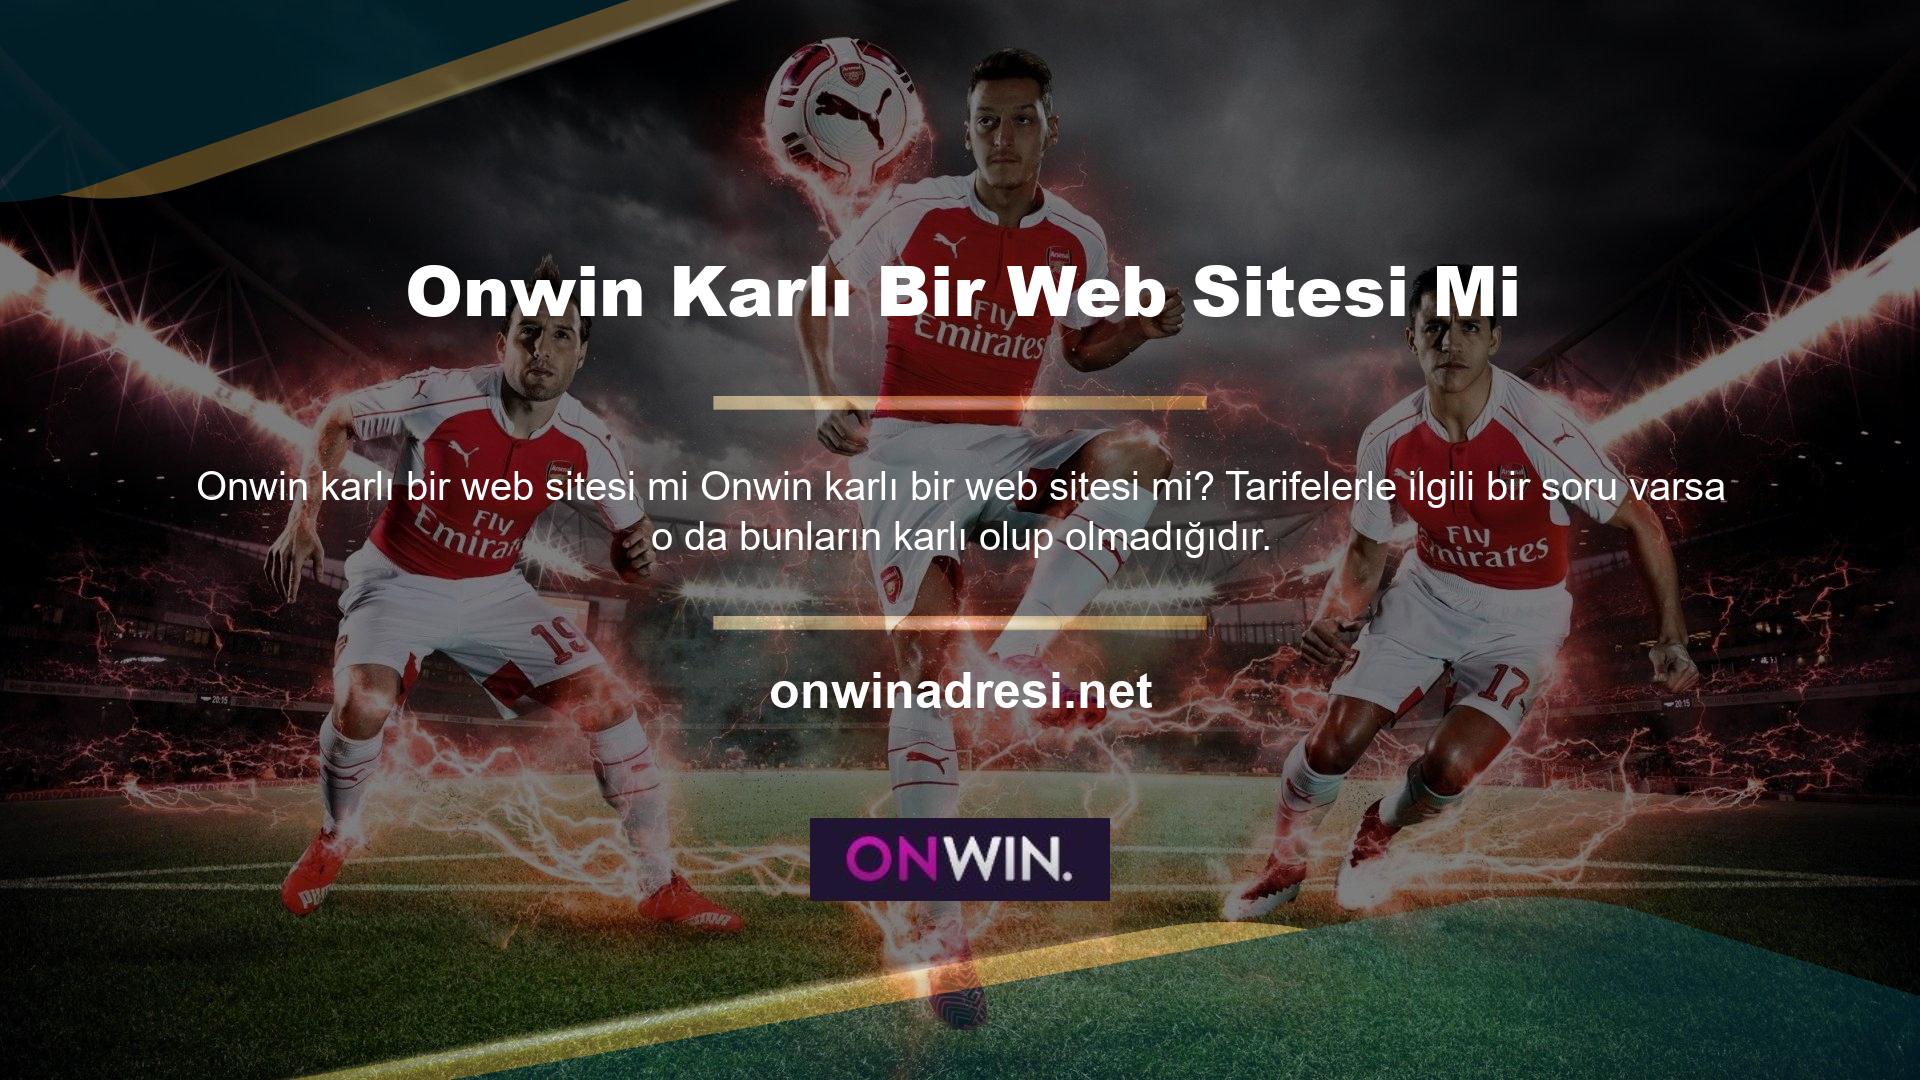 Onwin online bahis sitesi spor bahisleri ve casino oyunlarında en iyi oranları sunmaktadır